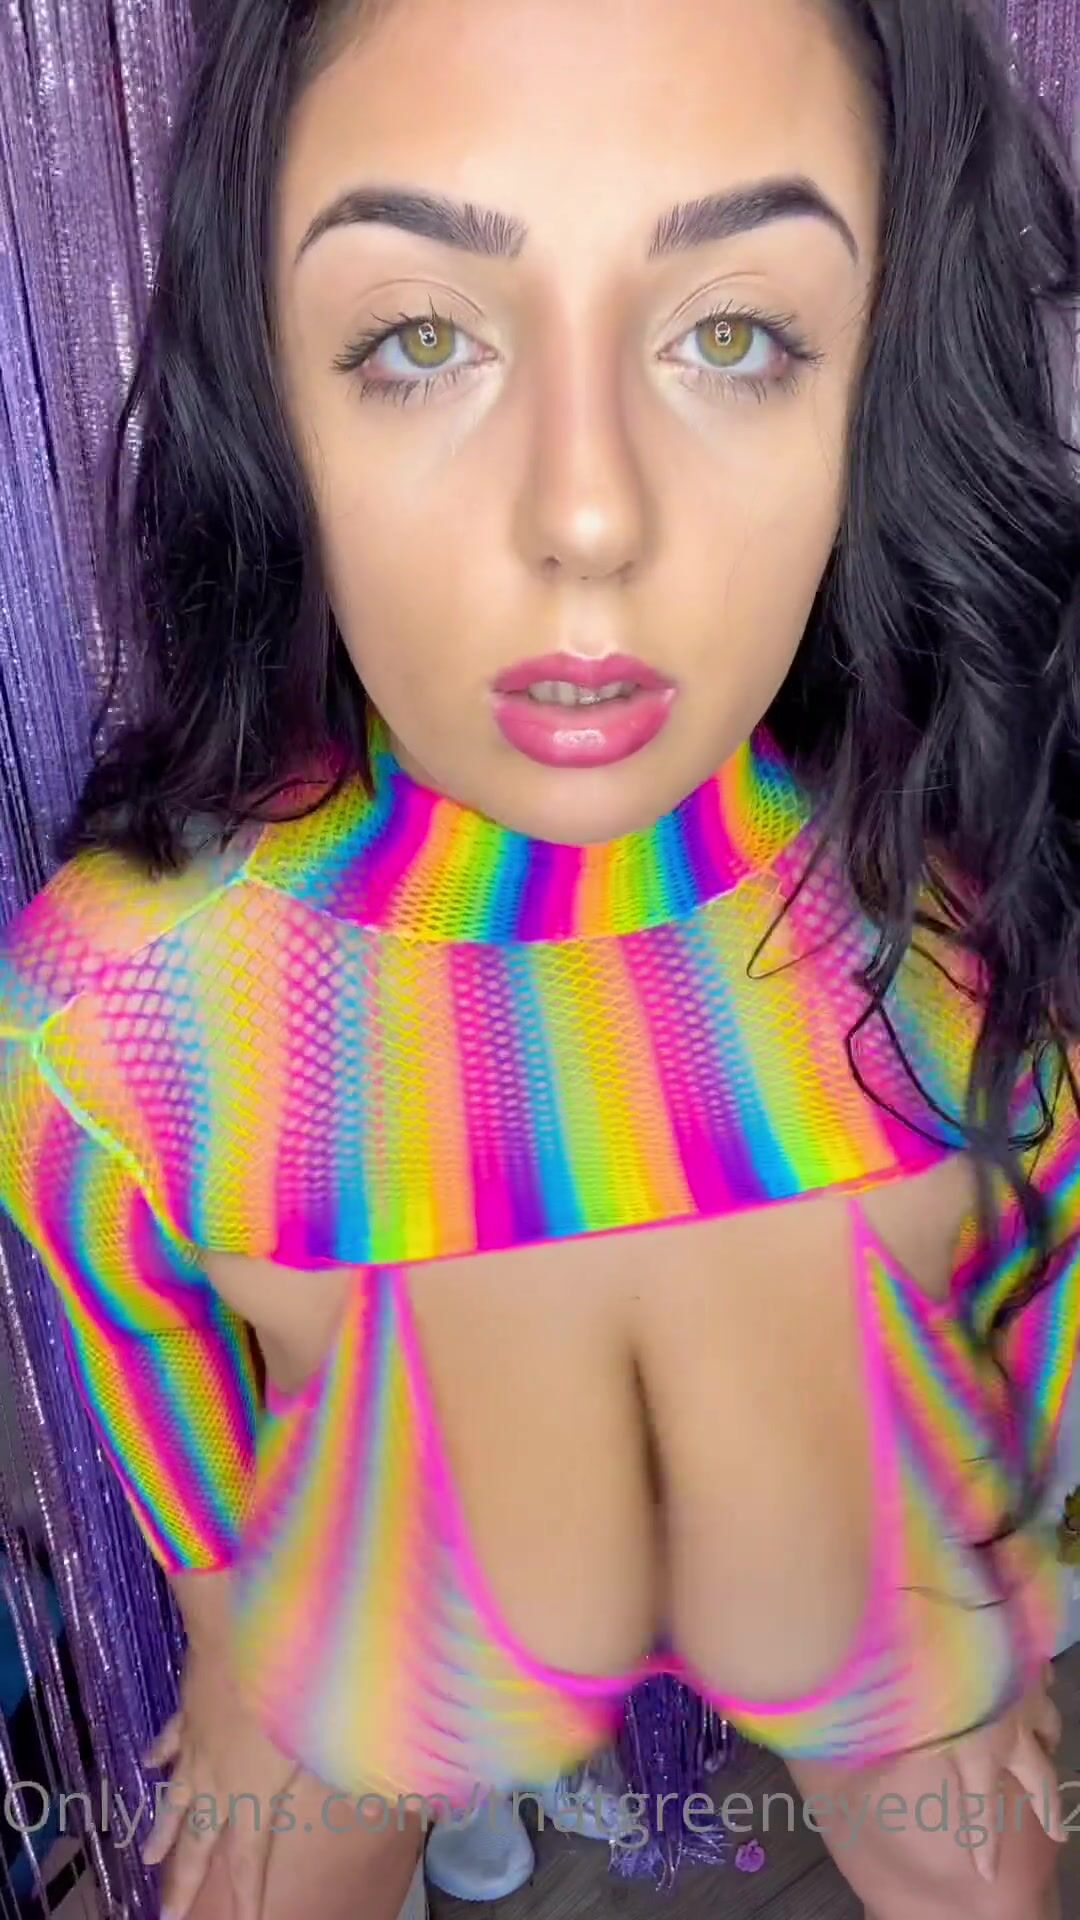 thatgreeneyedgirl - rainbow outfit